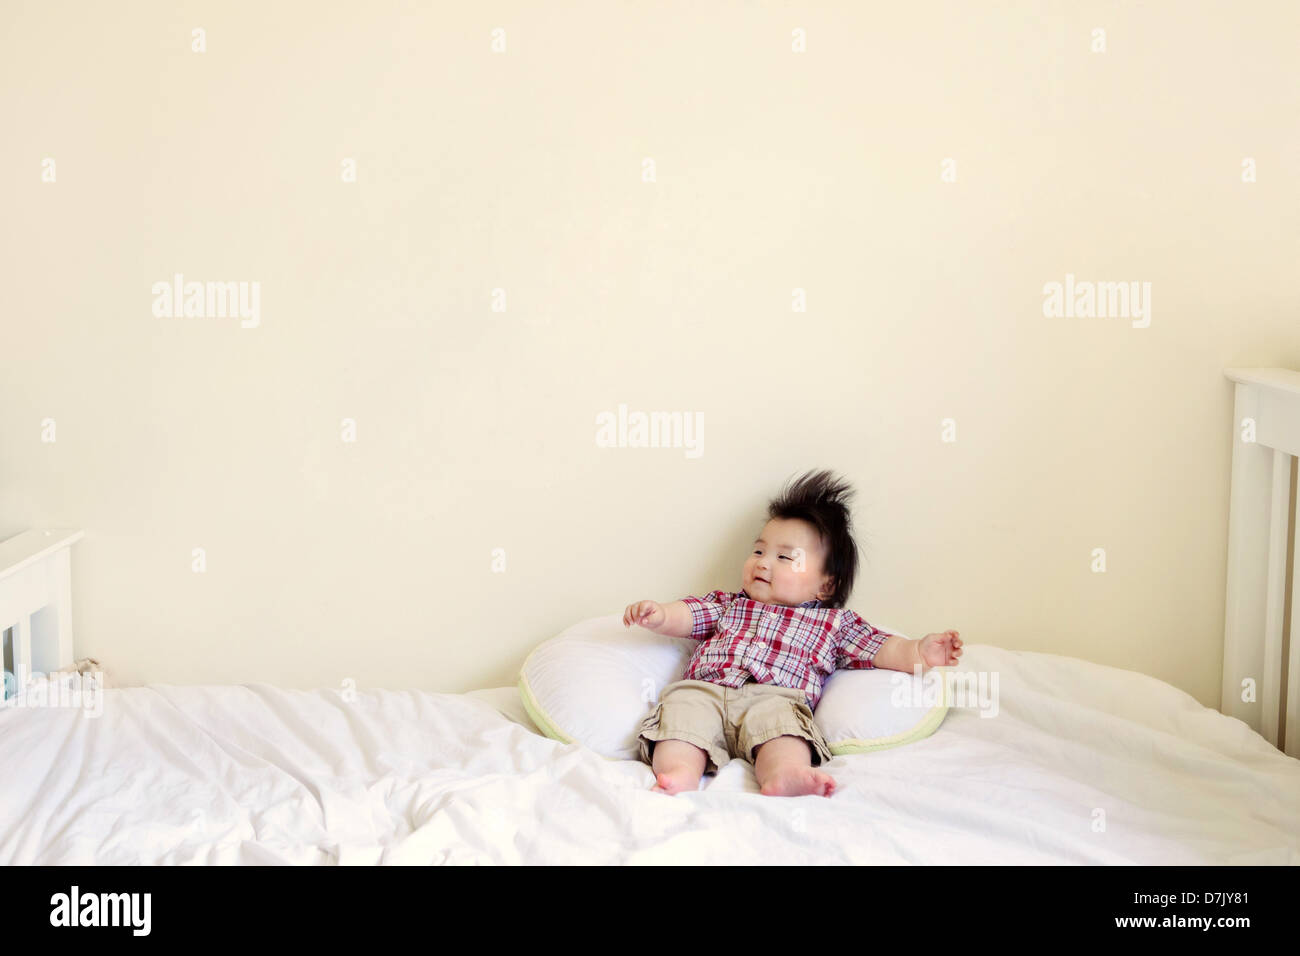 Koreanische amerikanische Kind mit stacheligen Haaren auf Bett ausgestreckten Armen Stockfoto